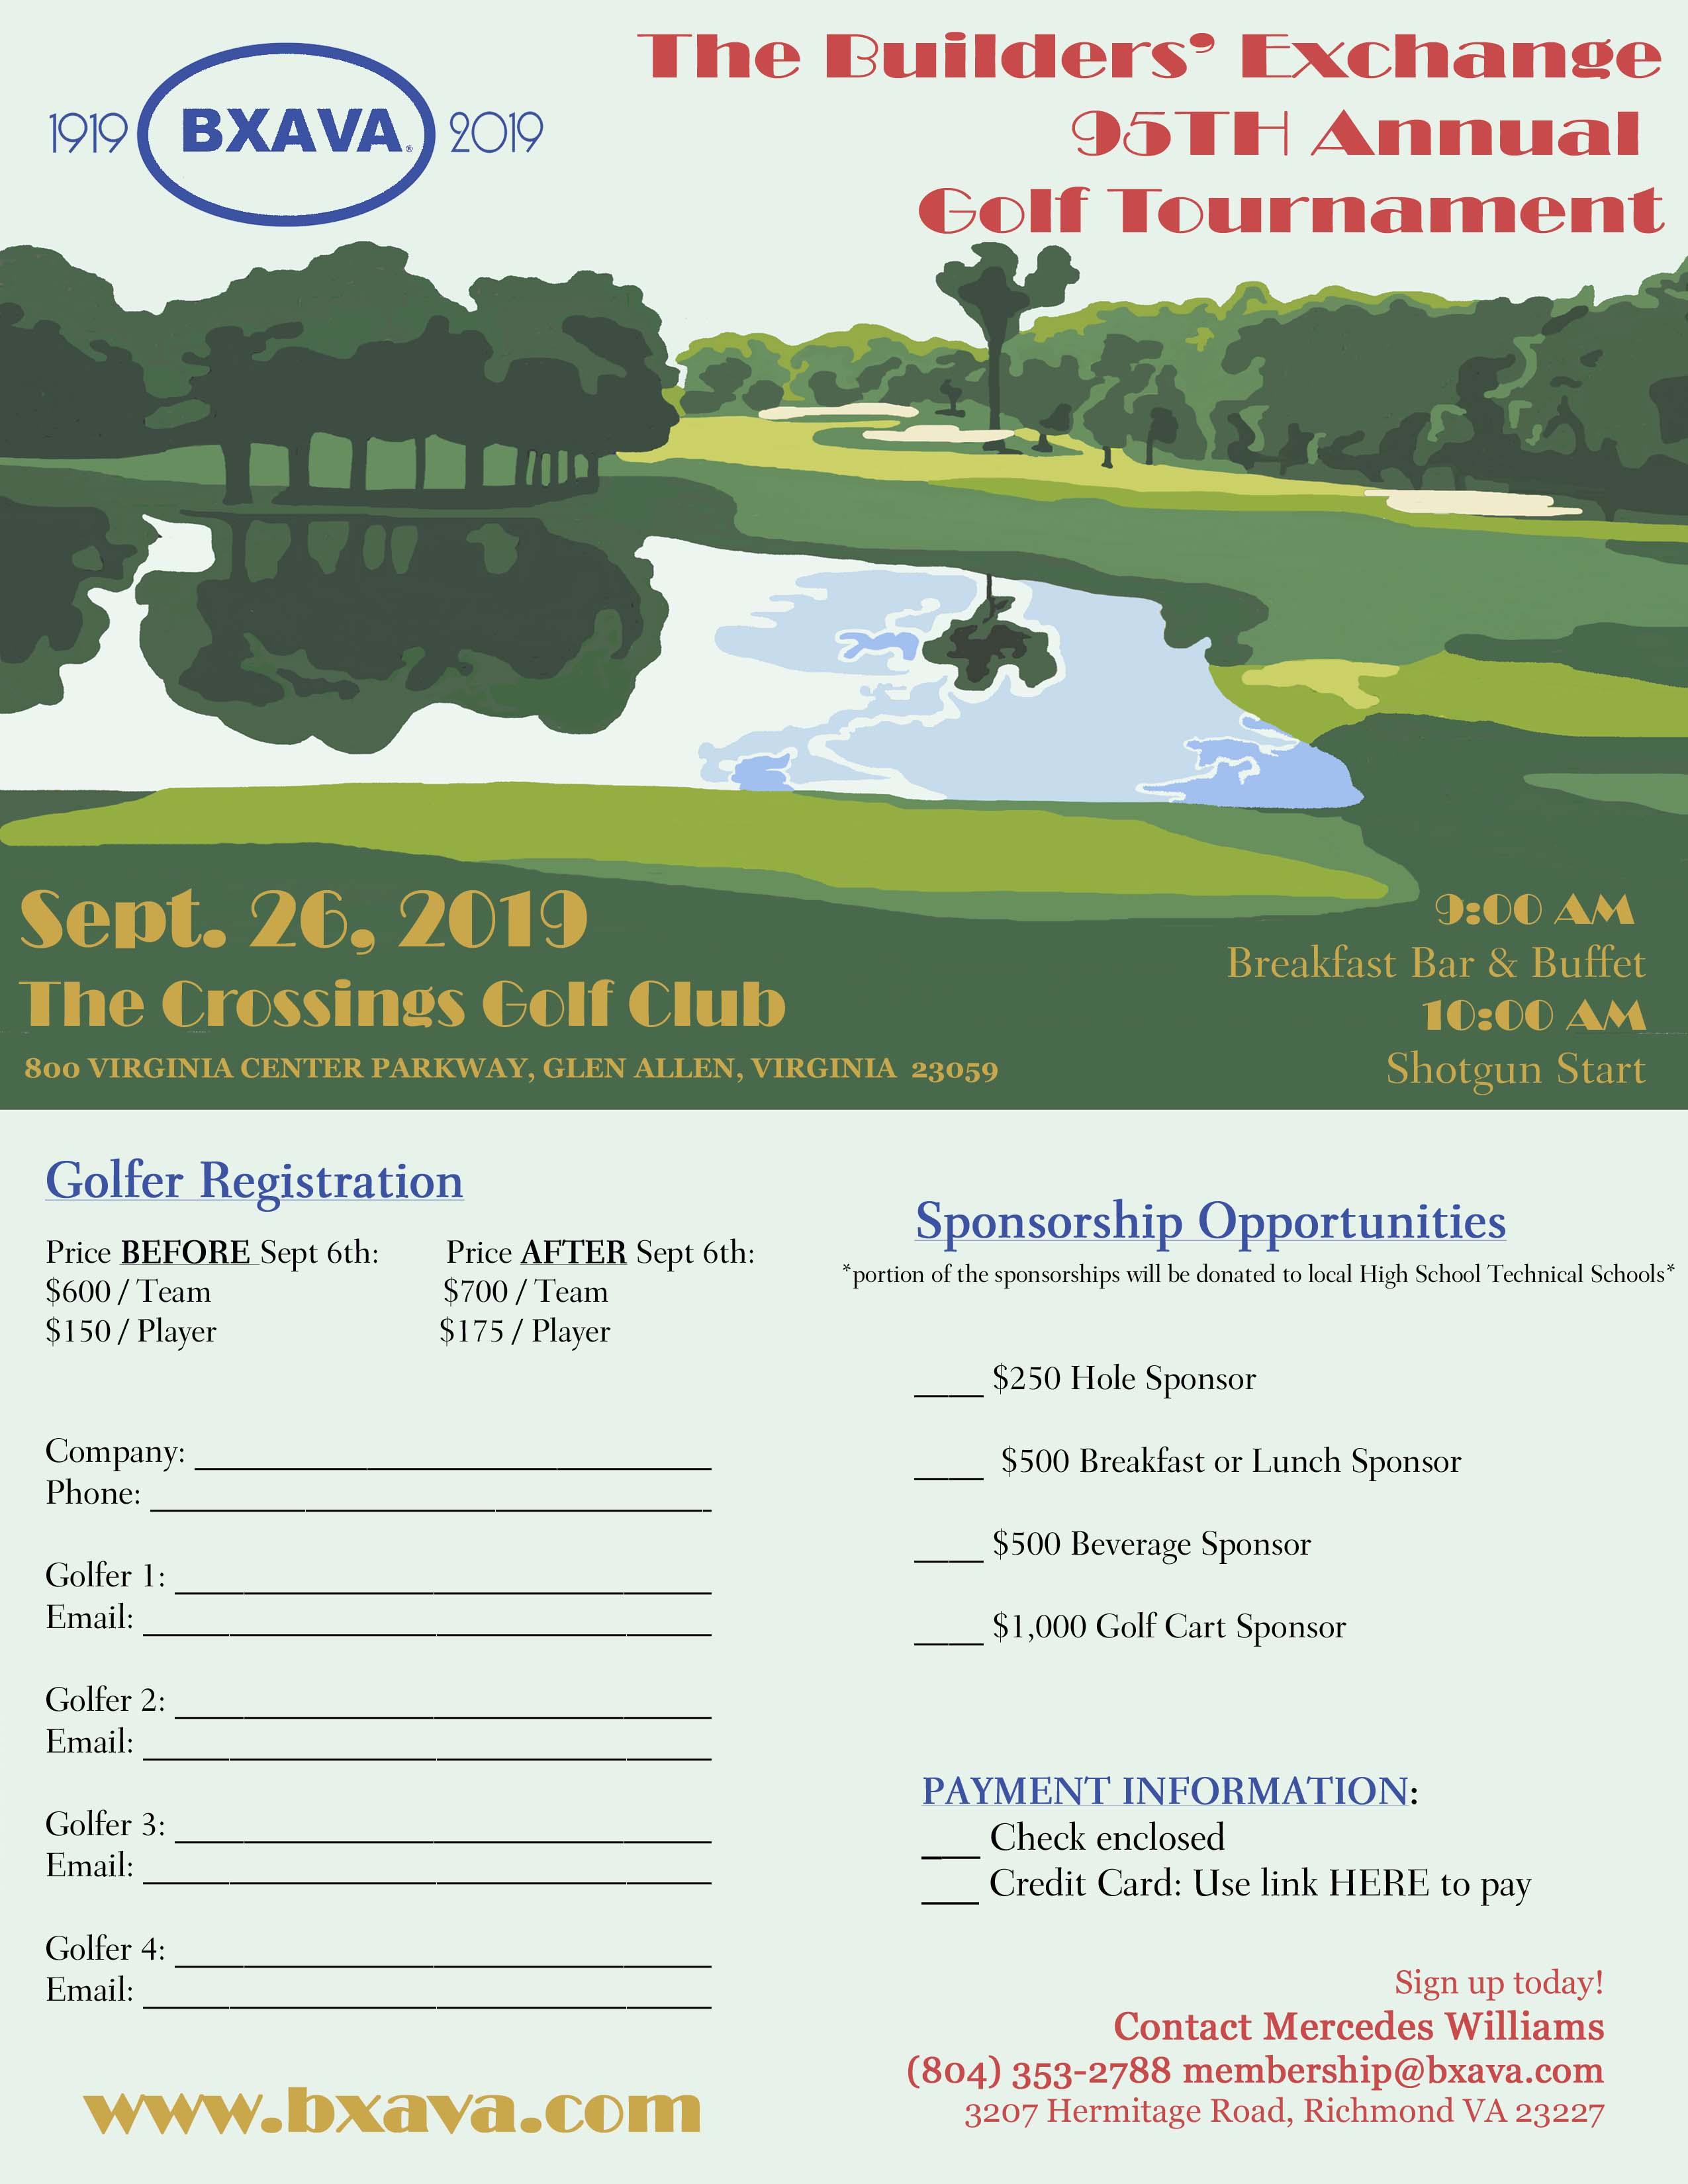 BXAVA 95th Annual Golf Tournament